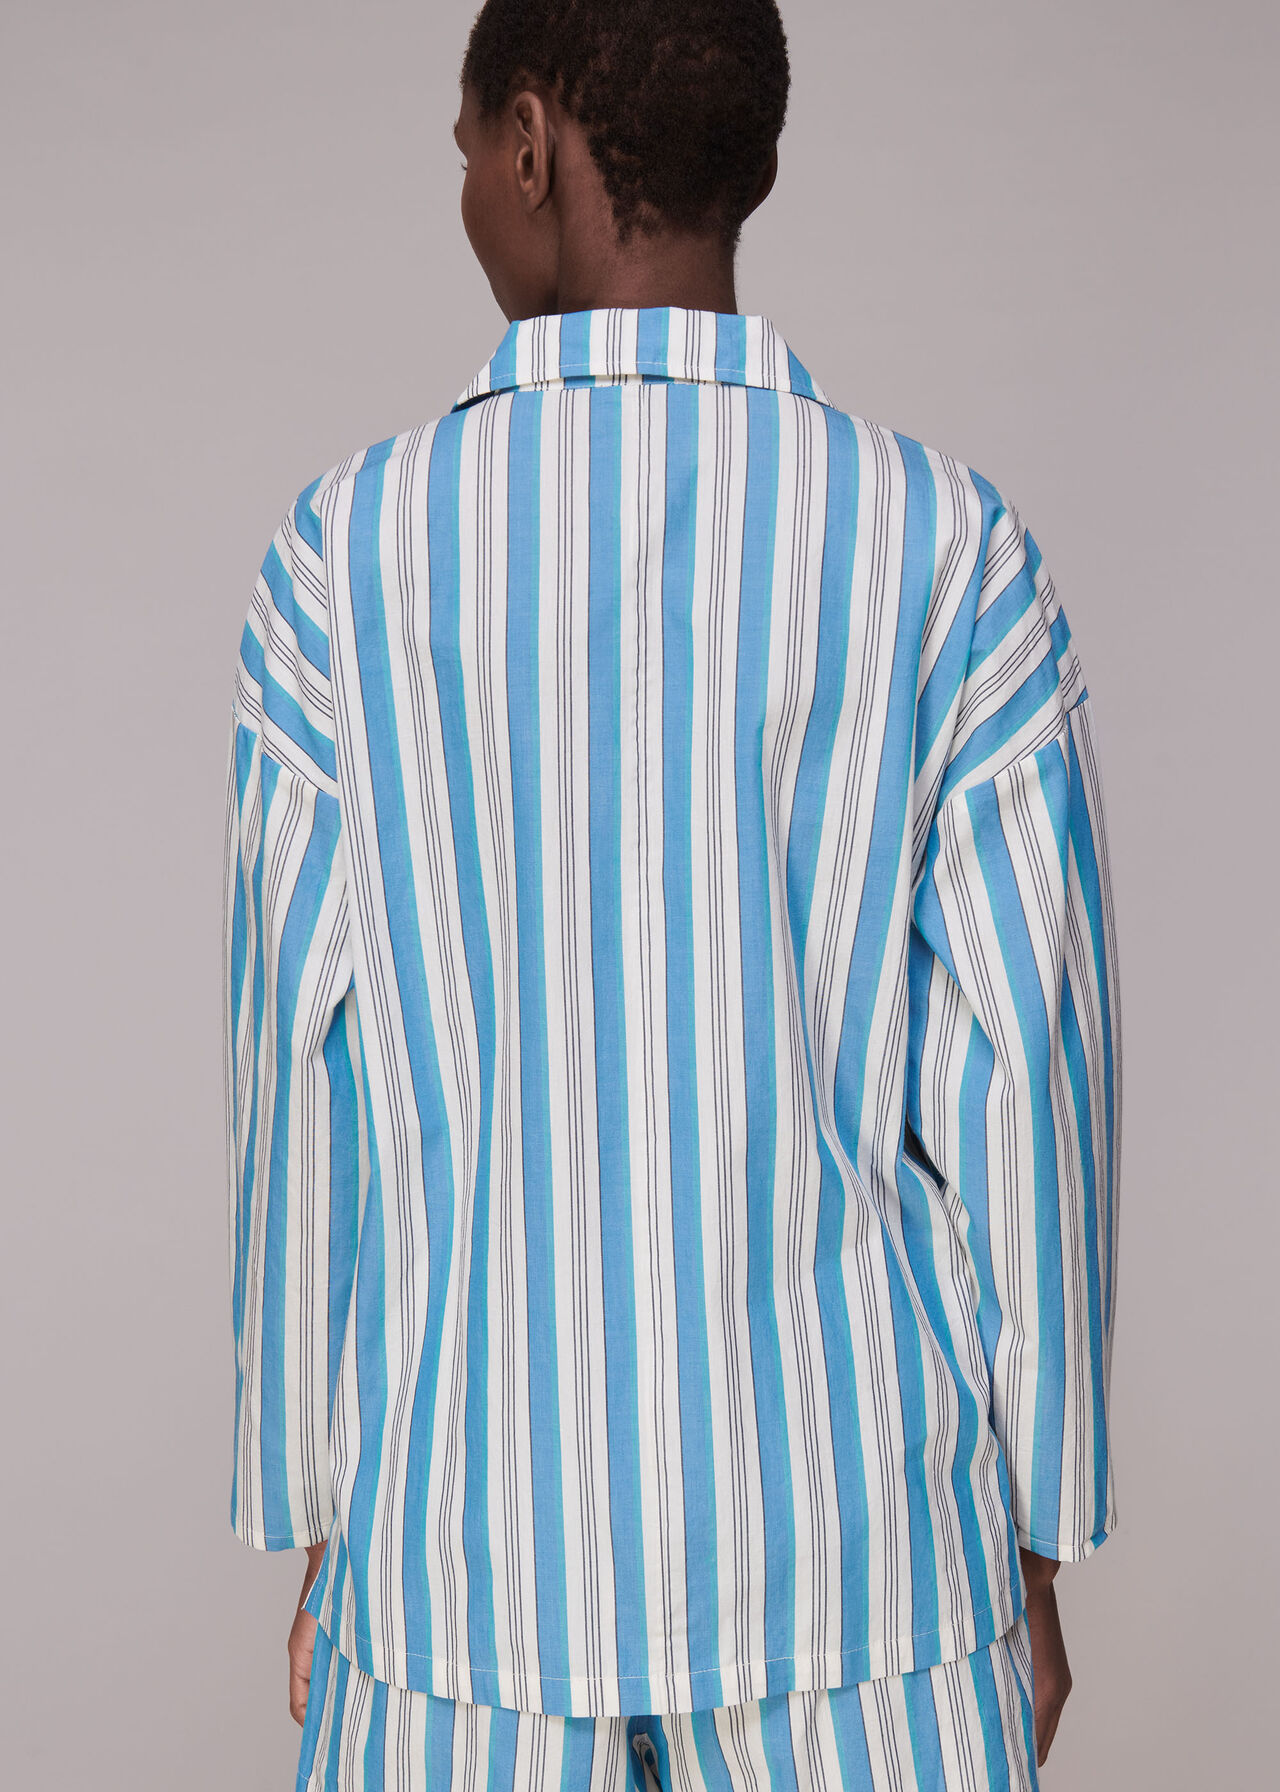 Gracie Stripe Pyjamas